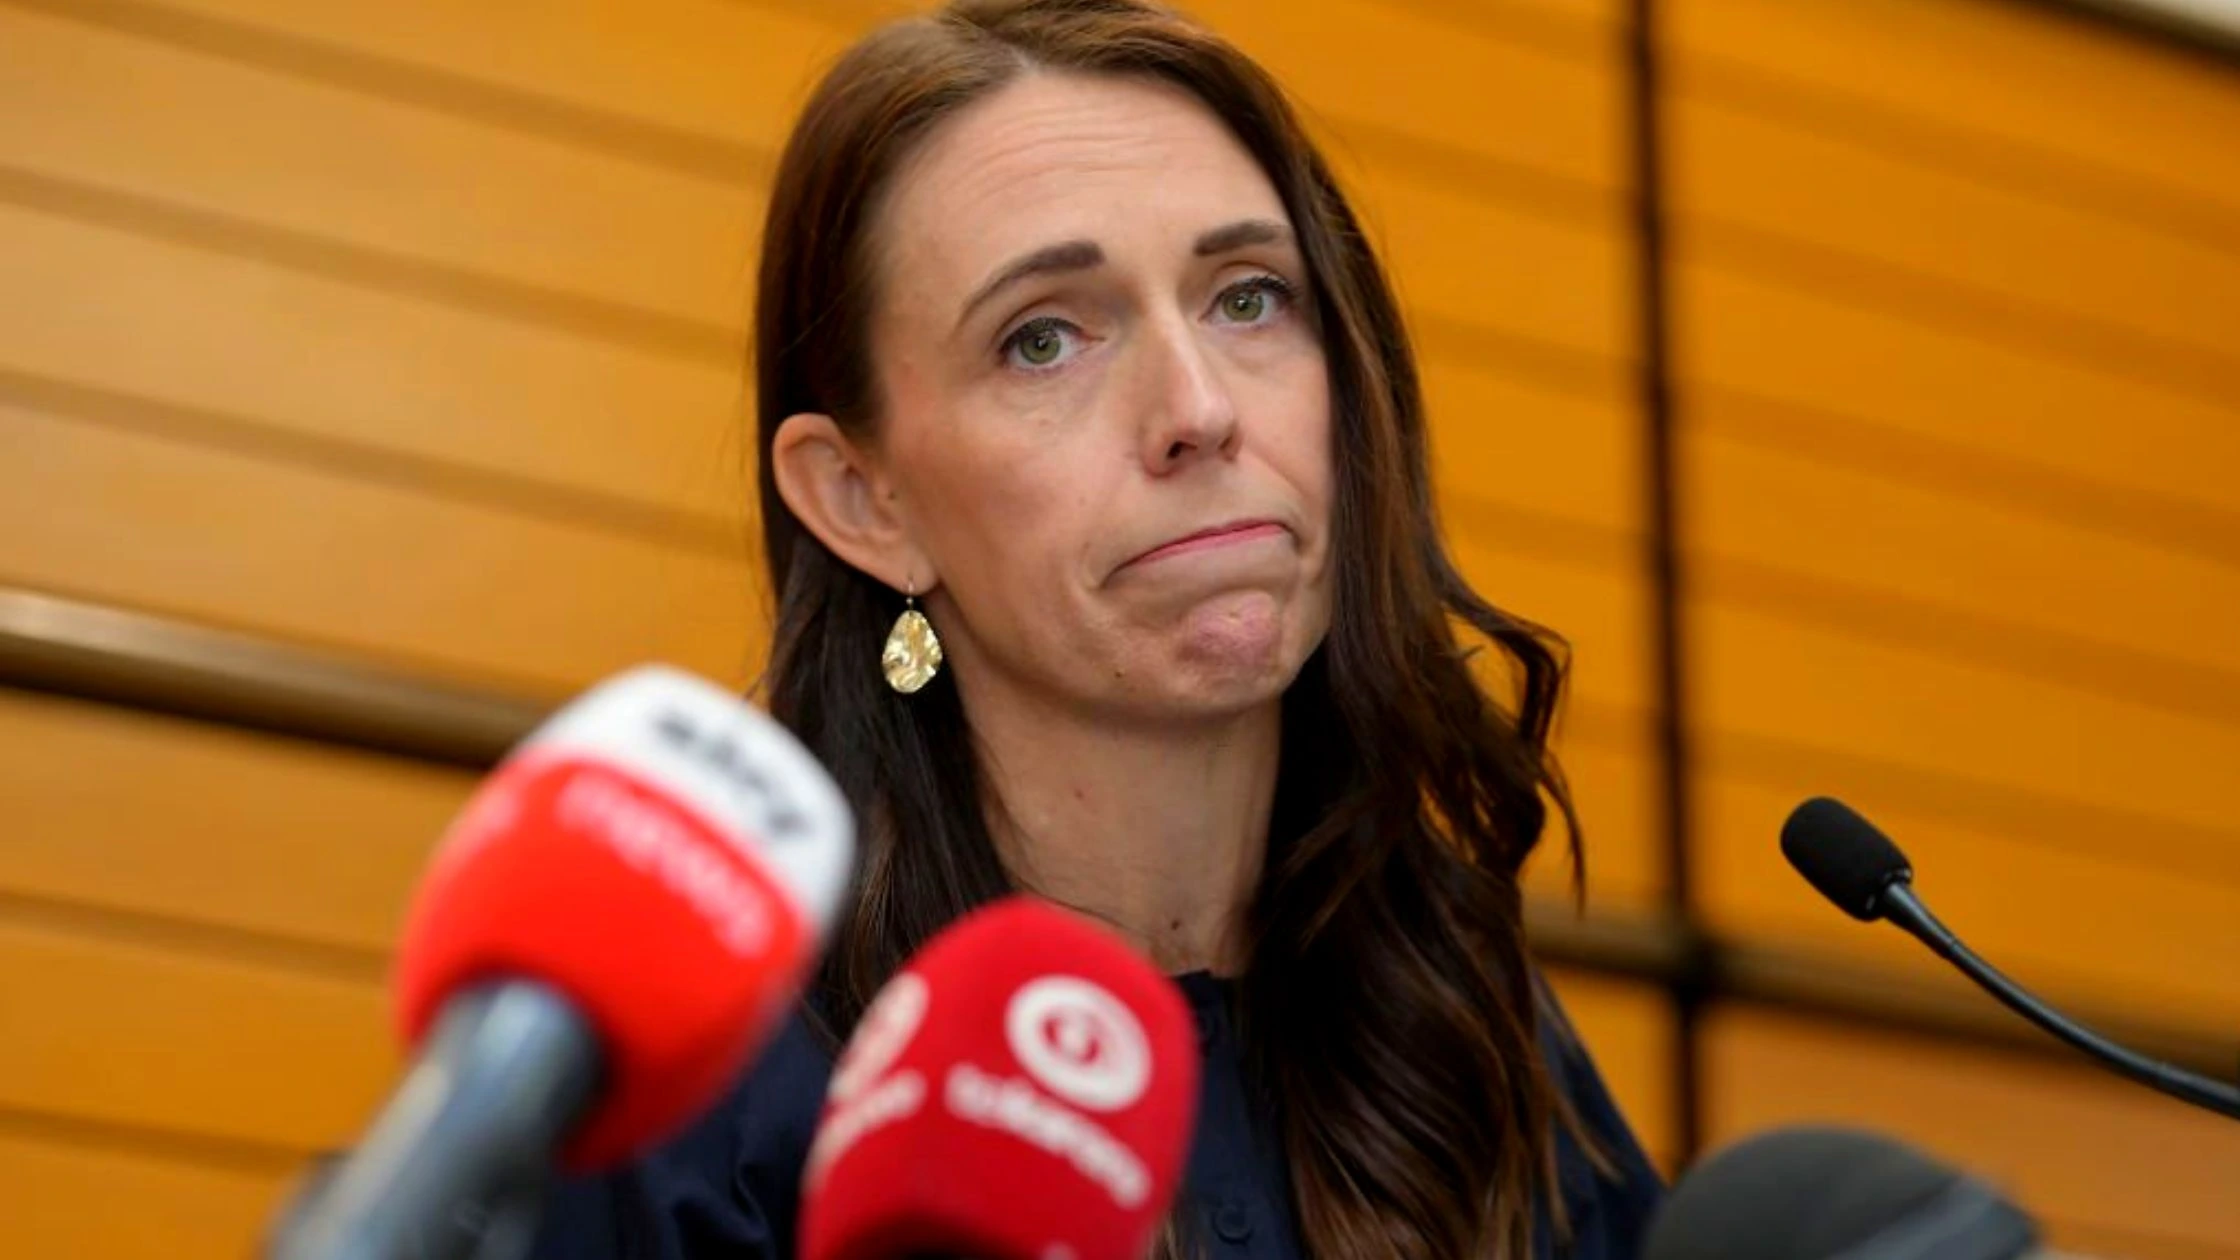 Jacinda Ardern shocks New Zealand, As She Revealed Her Resignation